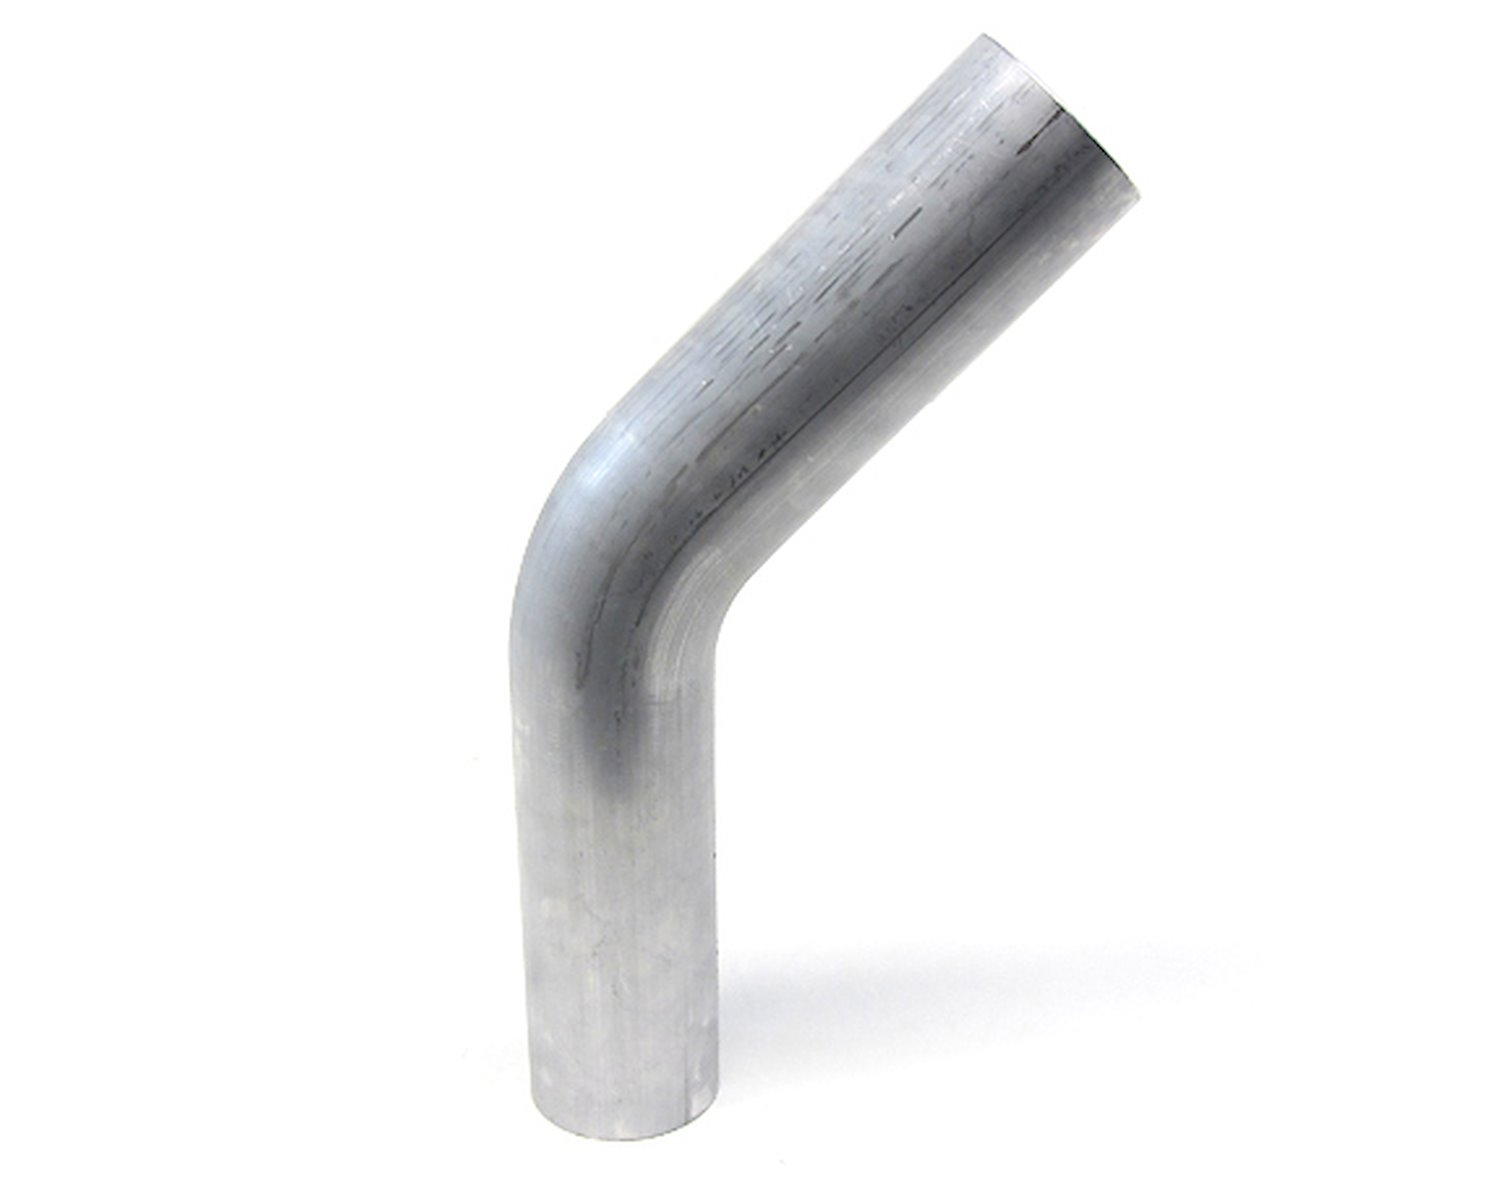 AT45-187-CLR-225 Aluminum Elbow Tube, 6061 Aluminum, 45-Degree Bend Elbow Tubing, 1-7/8 in. OD, Tight Radius, 2-1/4 in. CLR